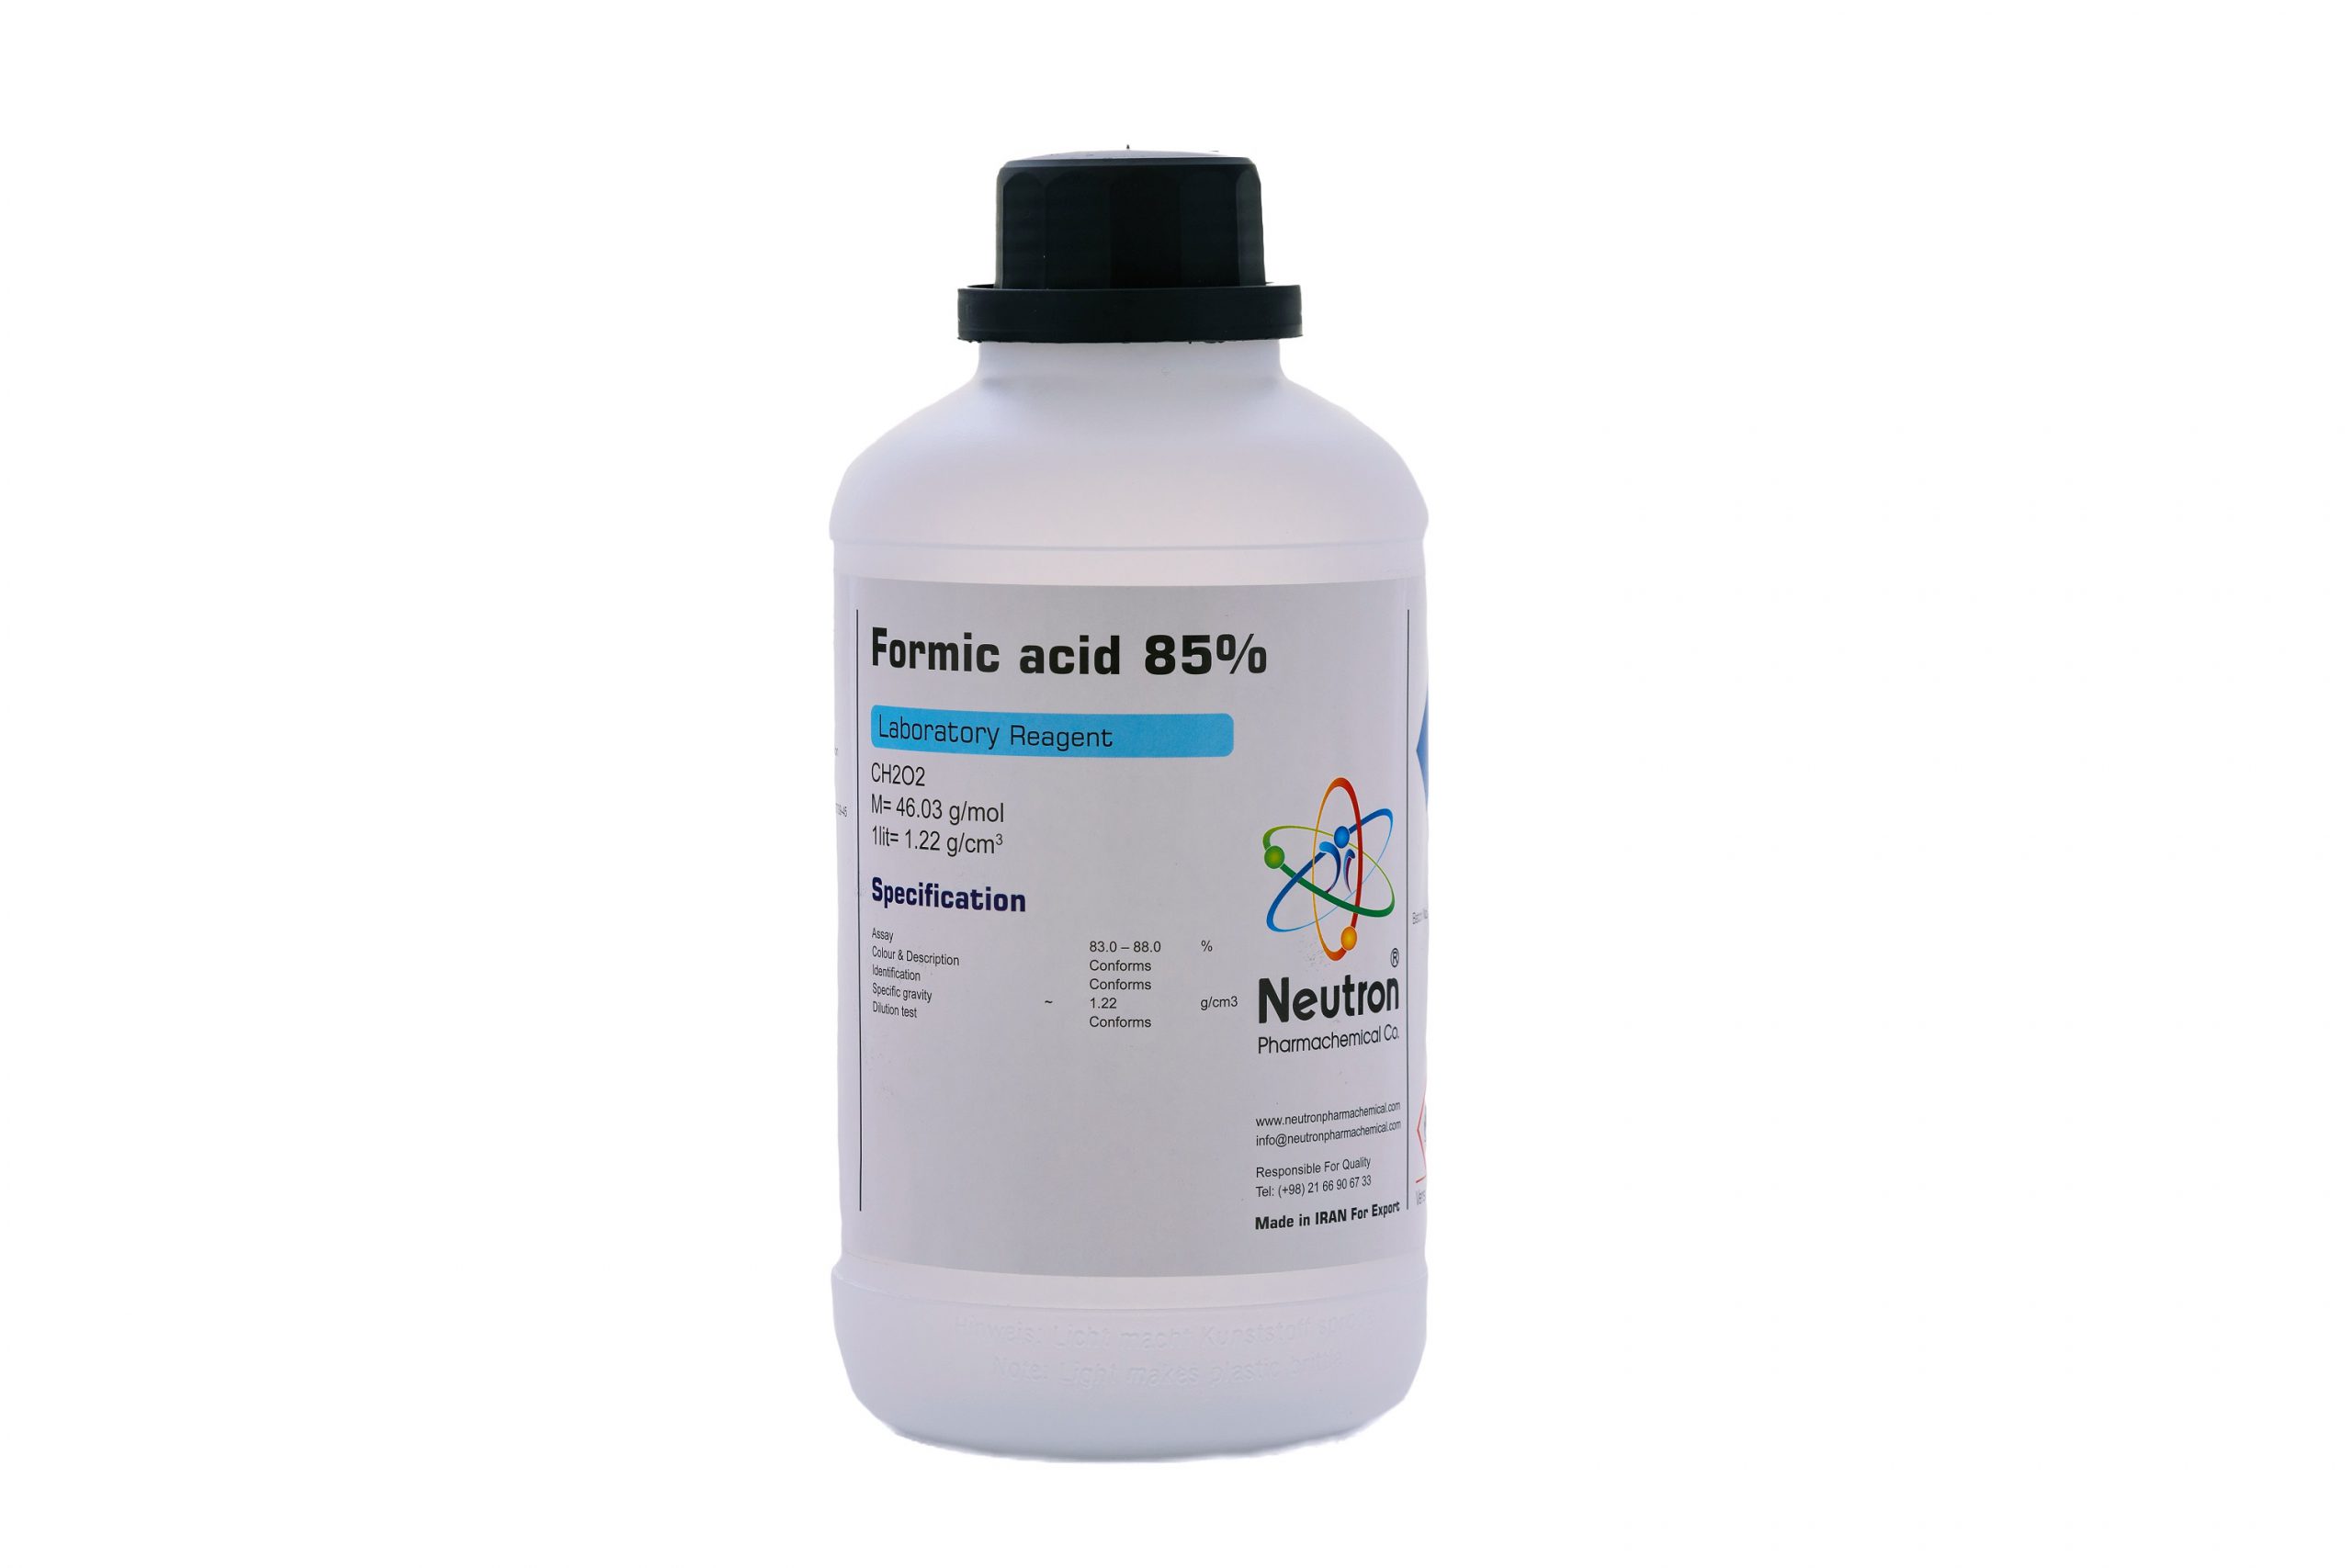 اسید فرمیک 85 درصد 1 لیتری بطری پلاستیکی گرید Laboratory، شیمی دارویی نوترون